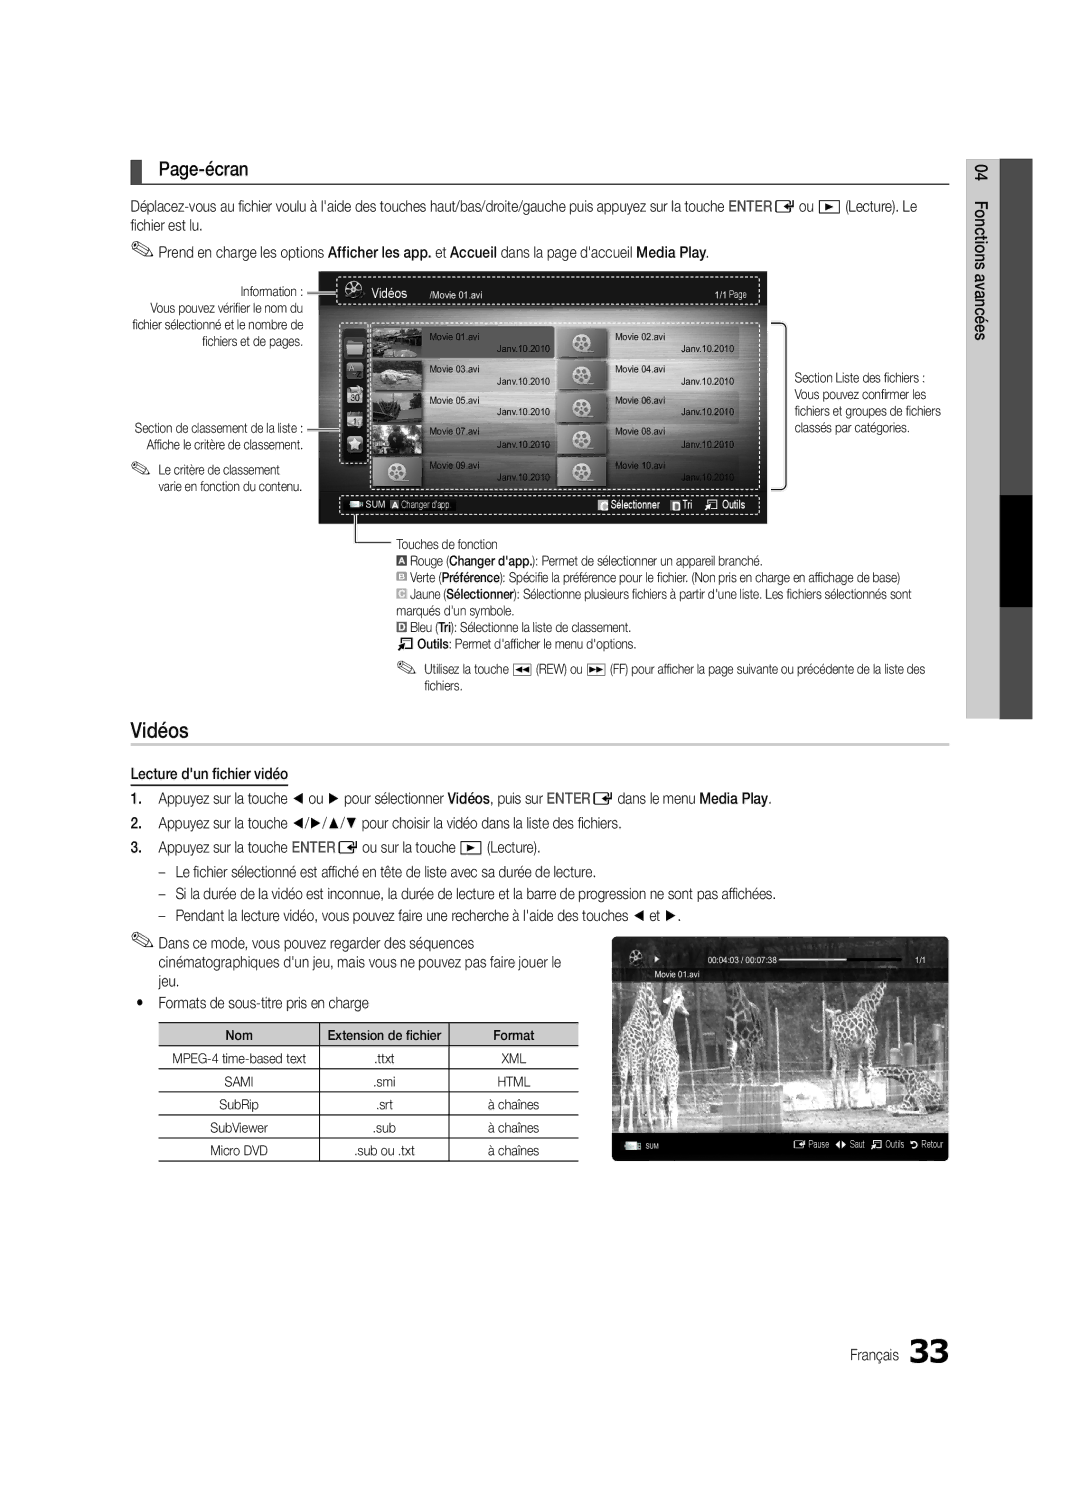 Samsung Series C5, BN68-02625B-02, UN40C5000 user manual Vidéos, Page-écran, Jeu, Yy Formats de sous-titre pris en charge 